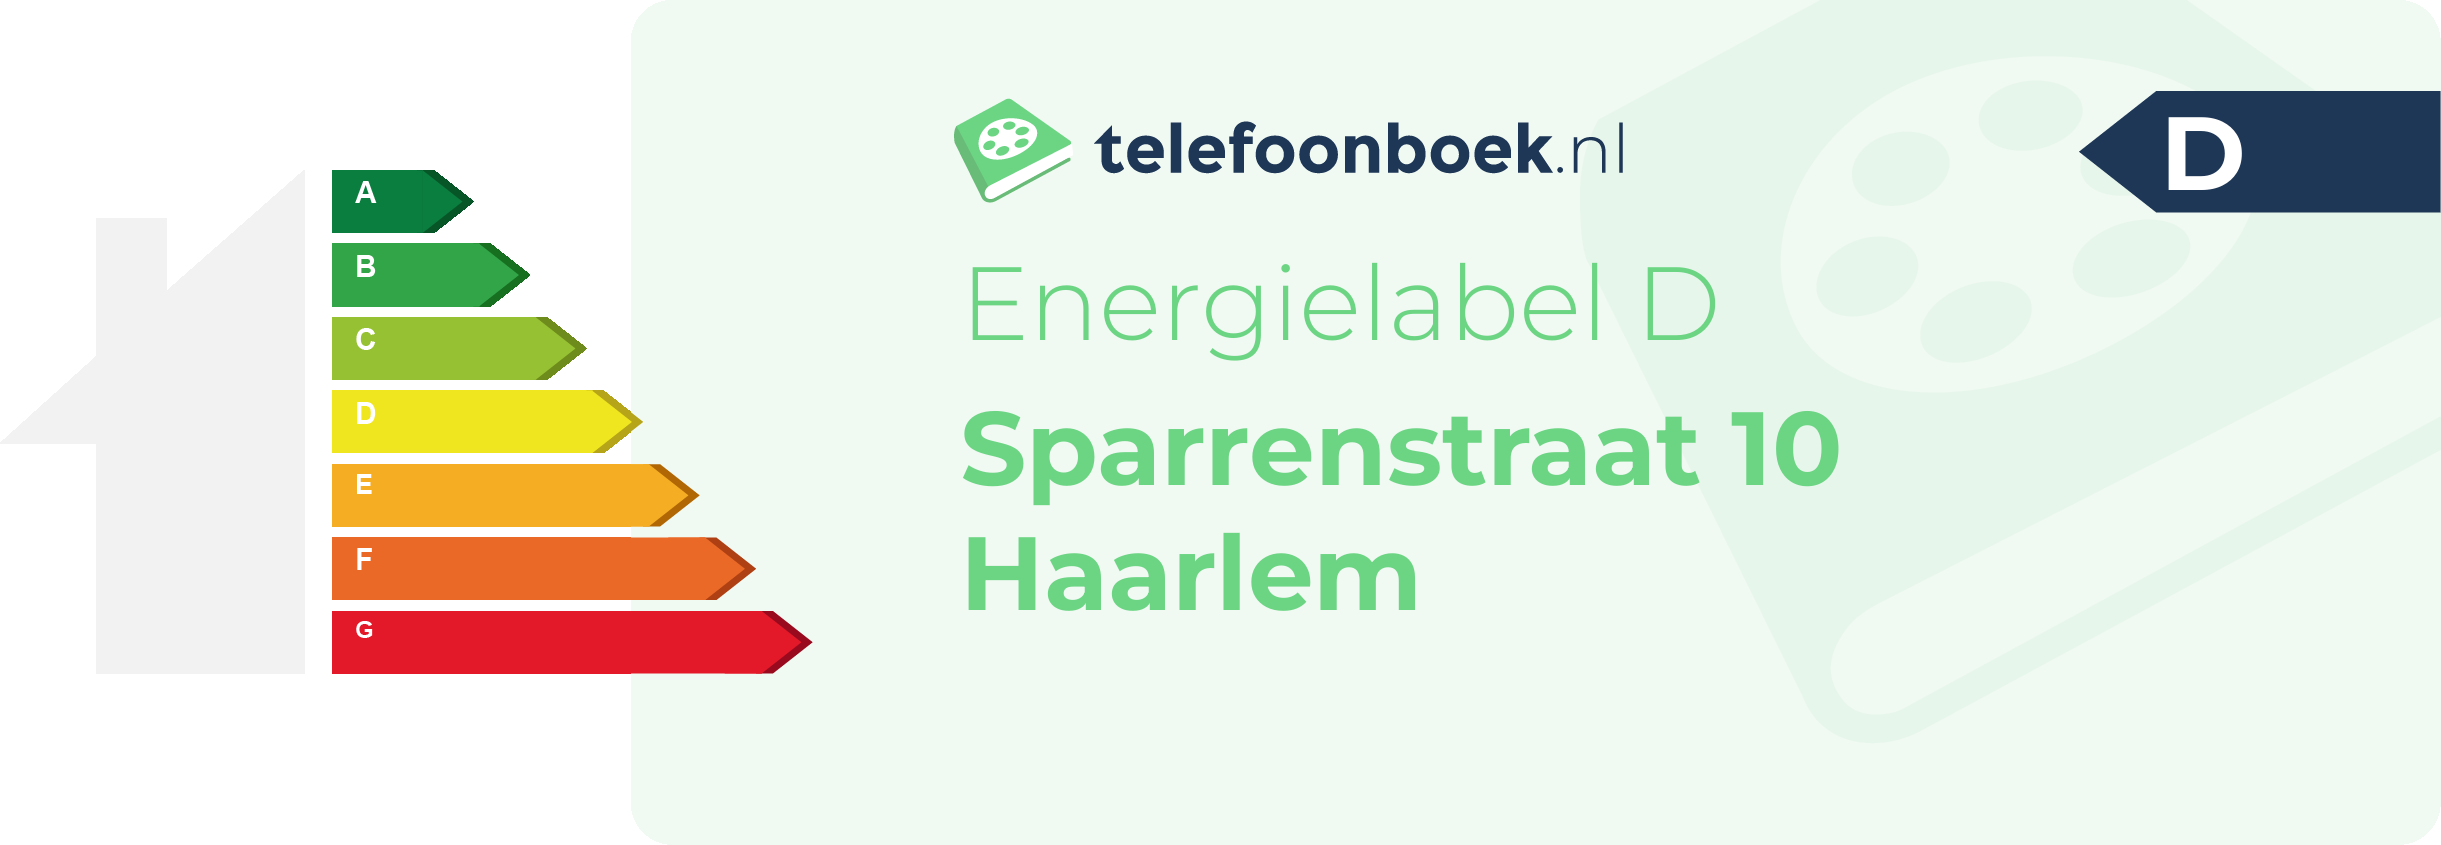 Energielabel Sparrenstraat 10 Haarlem